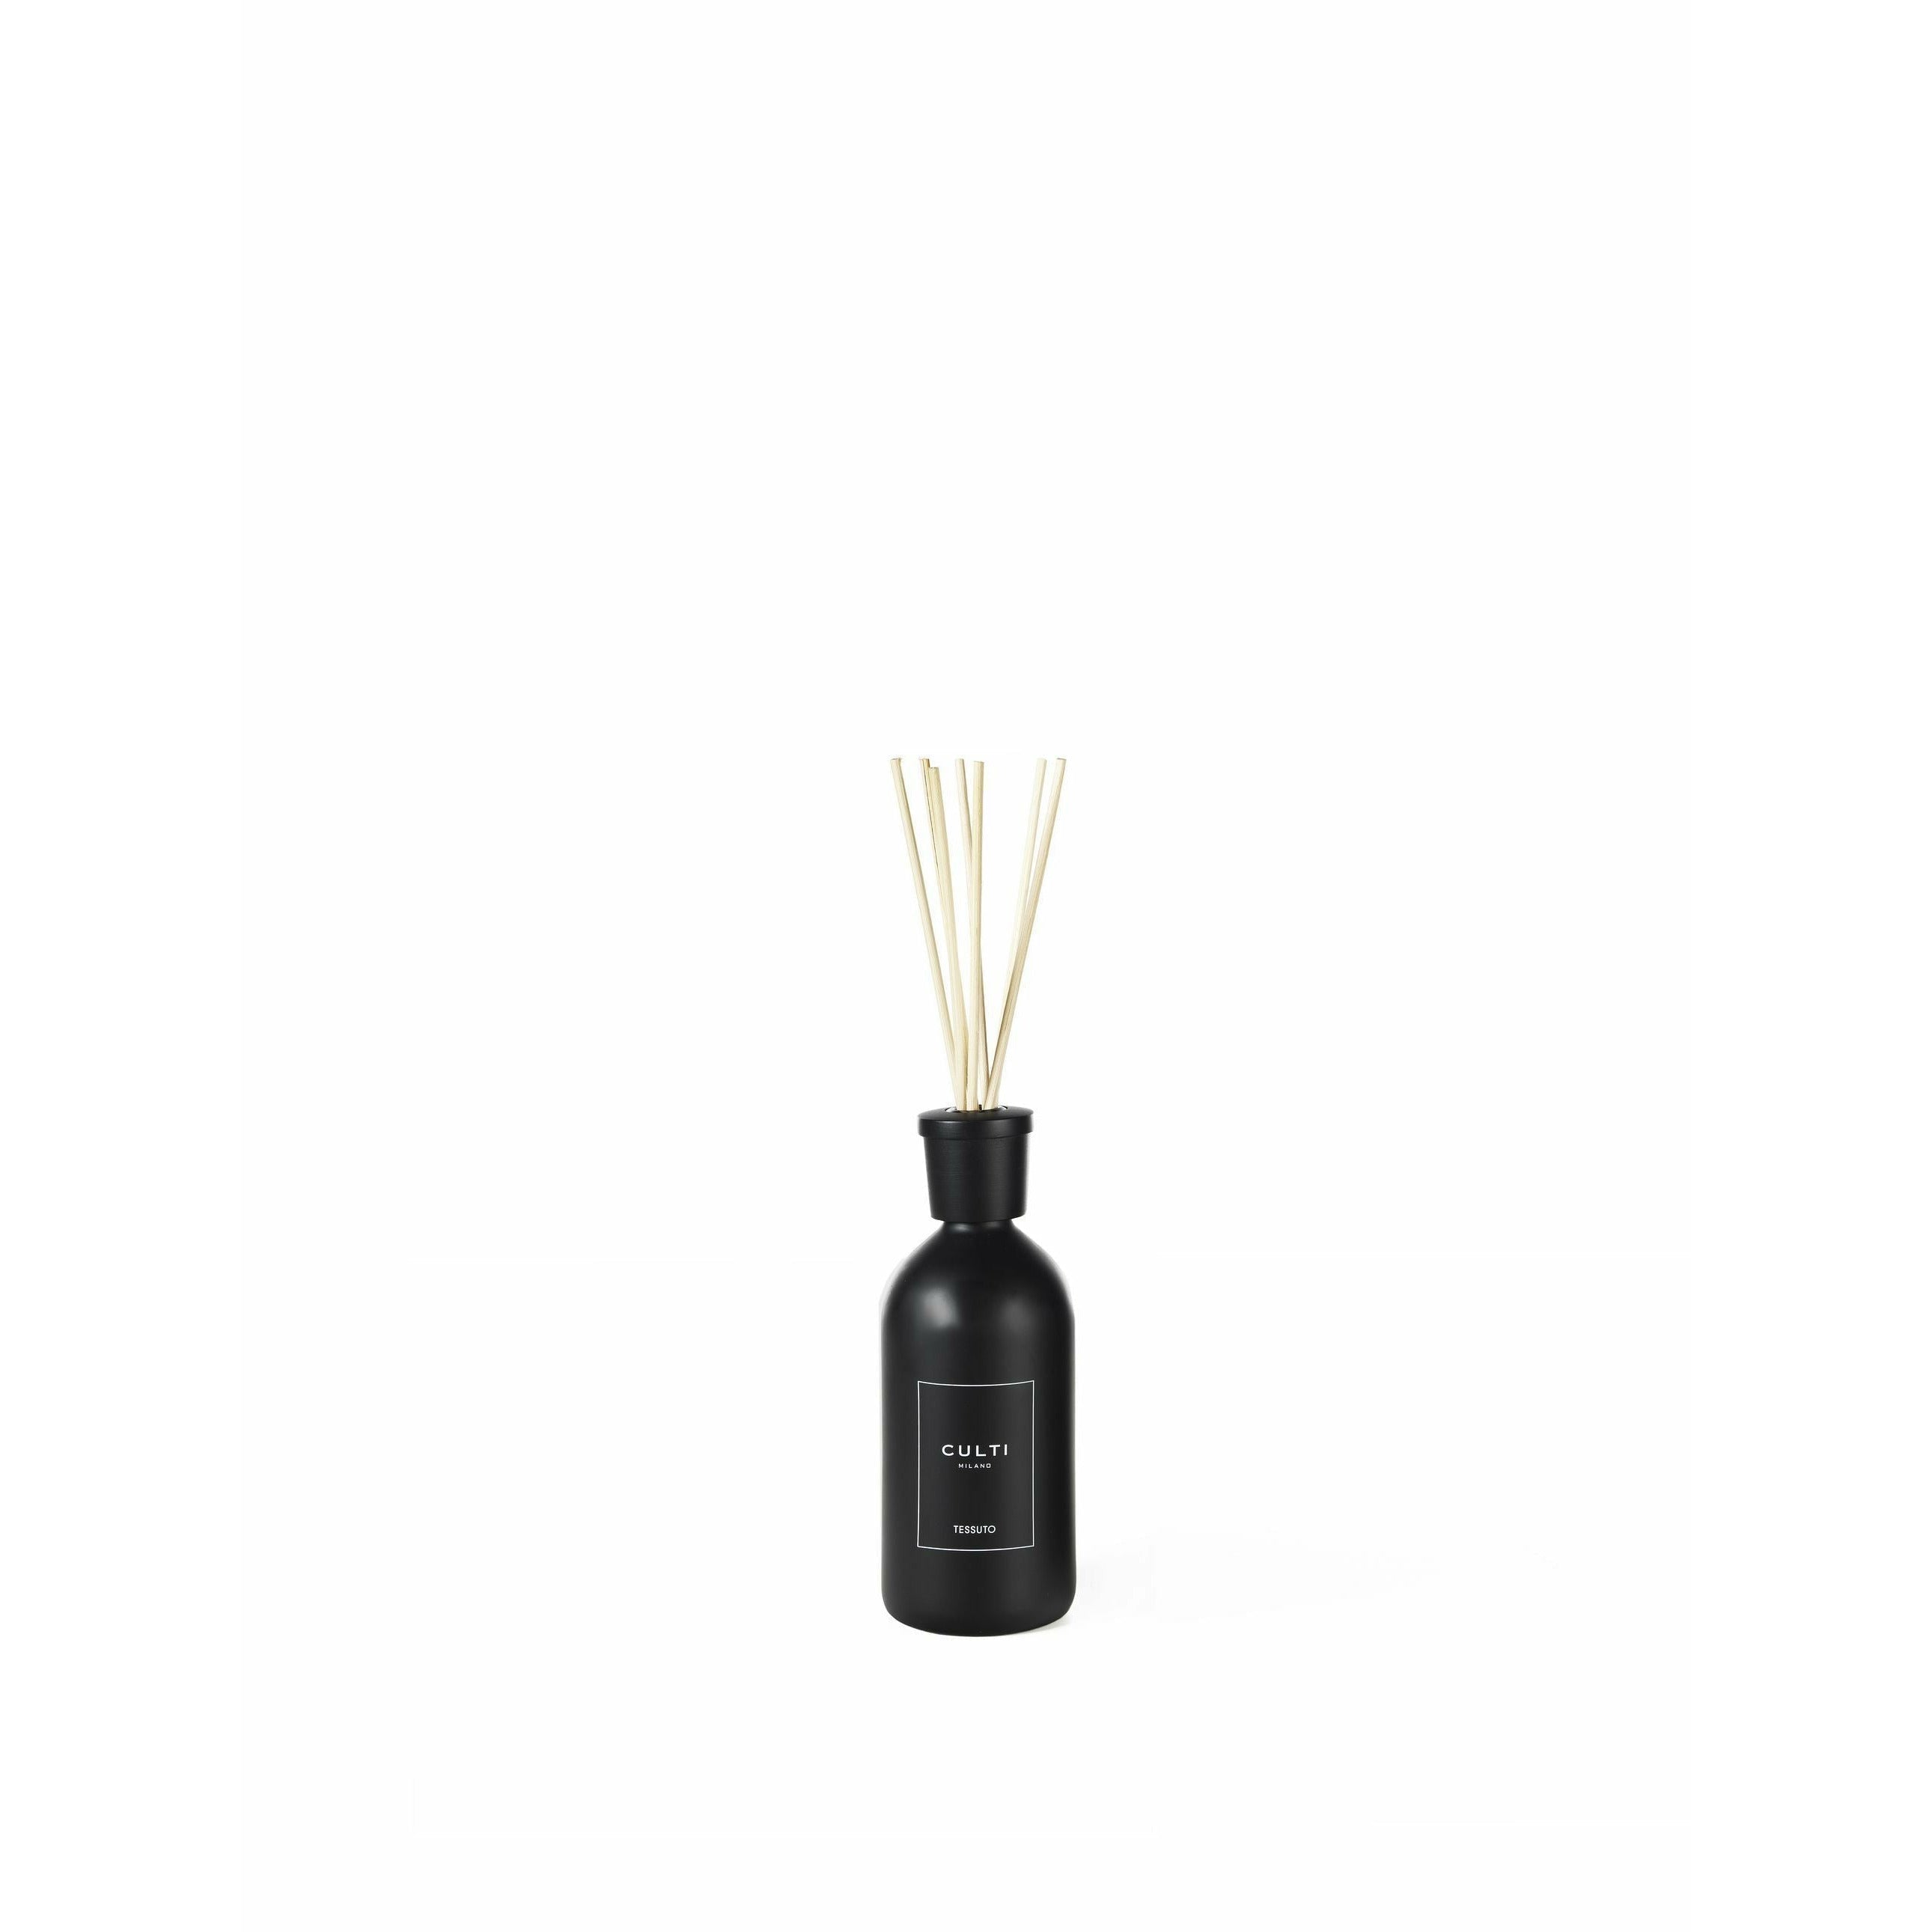 Culti Milano Style Black Label Home Diffuser Tessuto, 500 ml